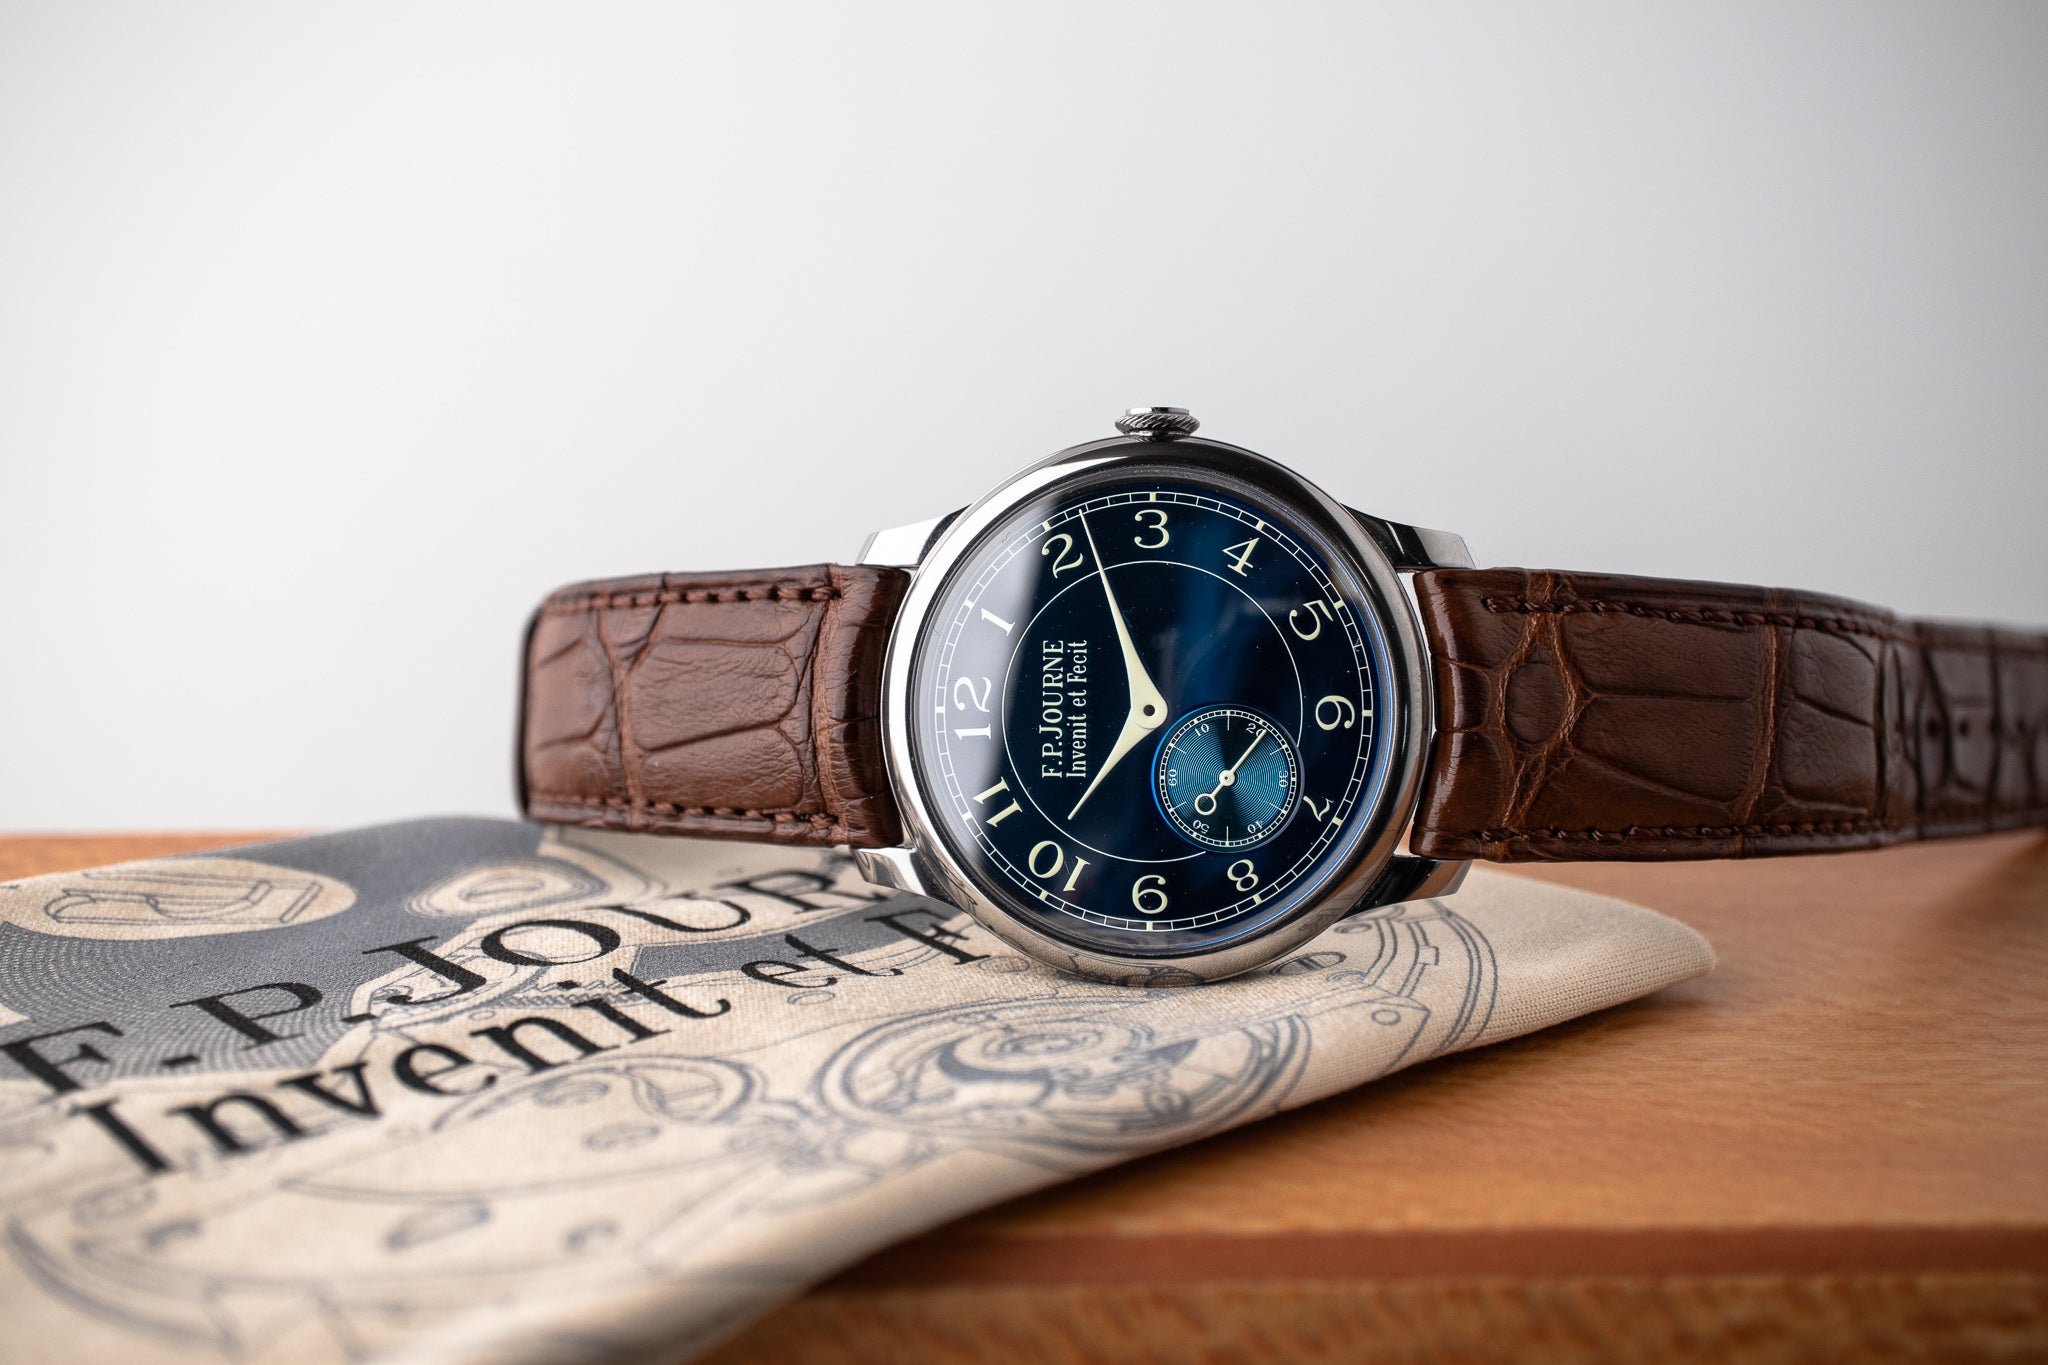 Pre-Owned: F.P. Journe Chronometre Bleu Tantalum